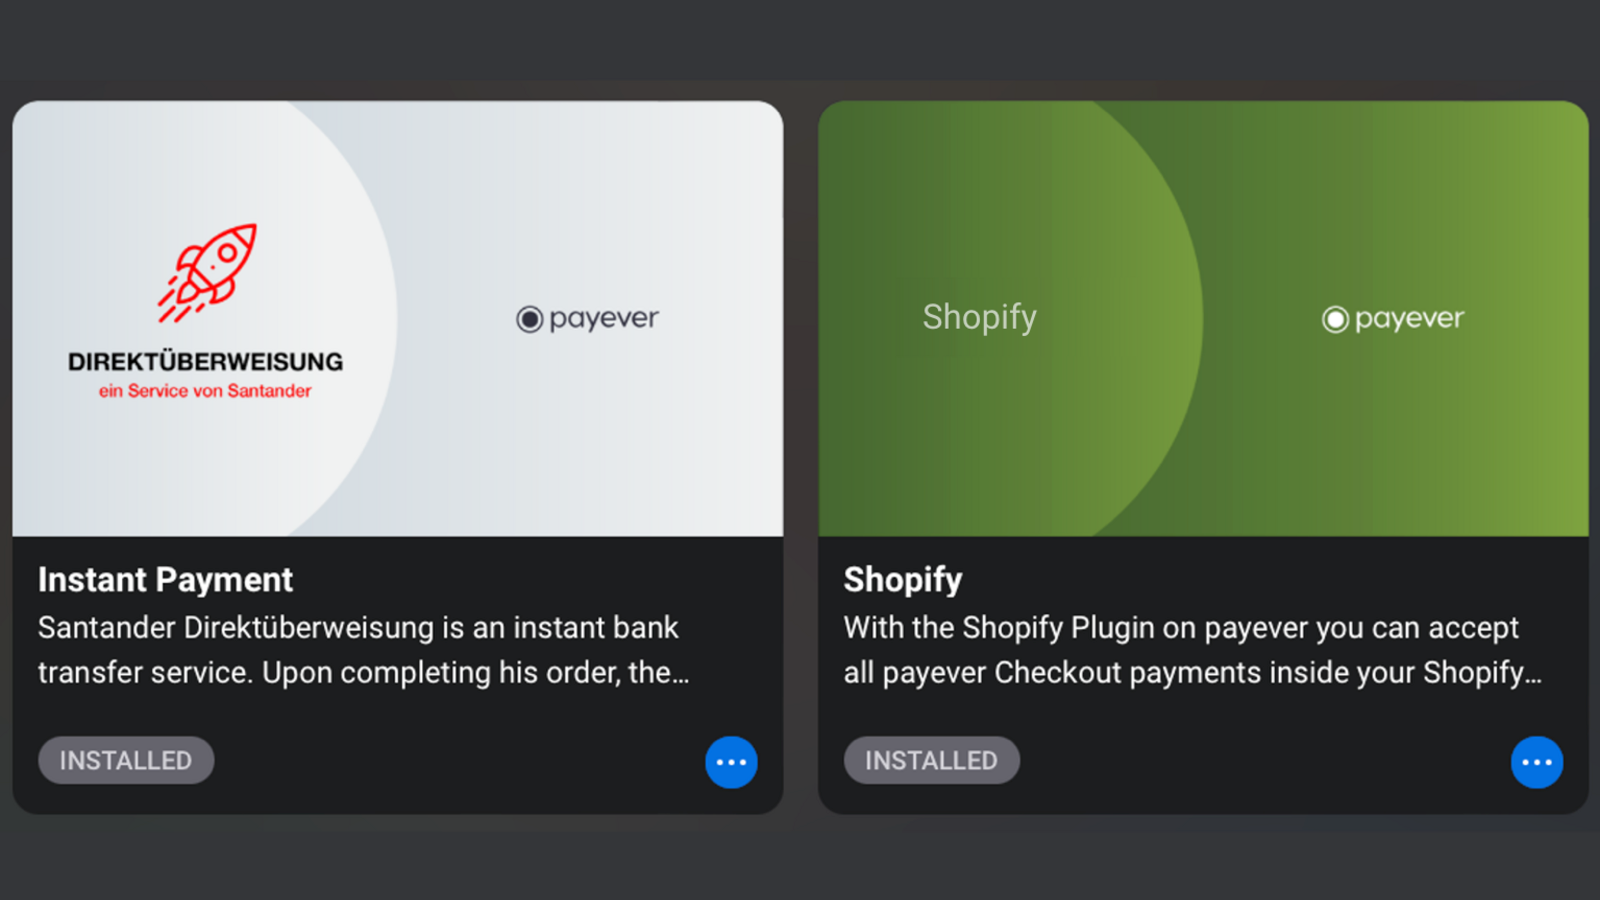 即时支付和Shopify应用在payever中